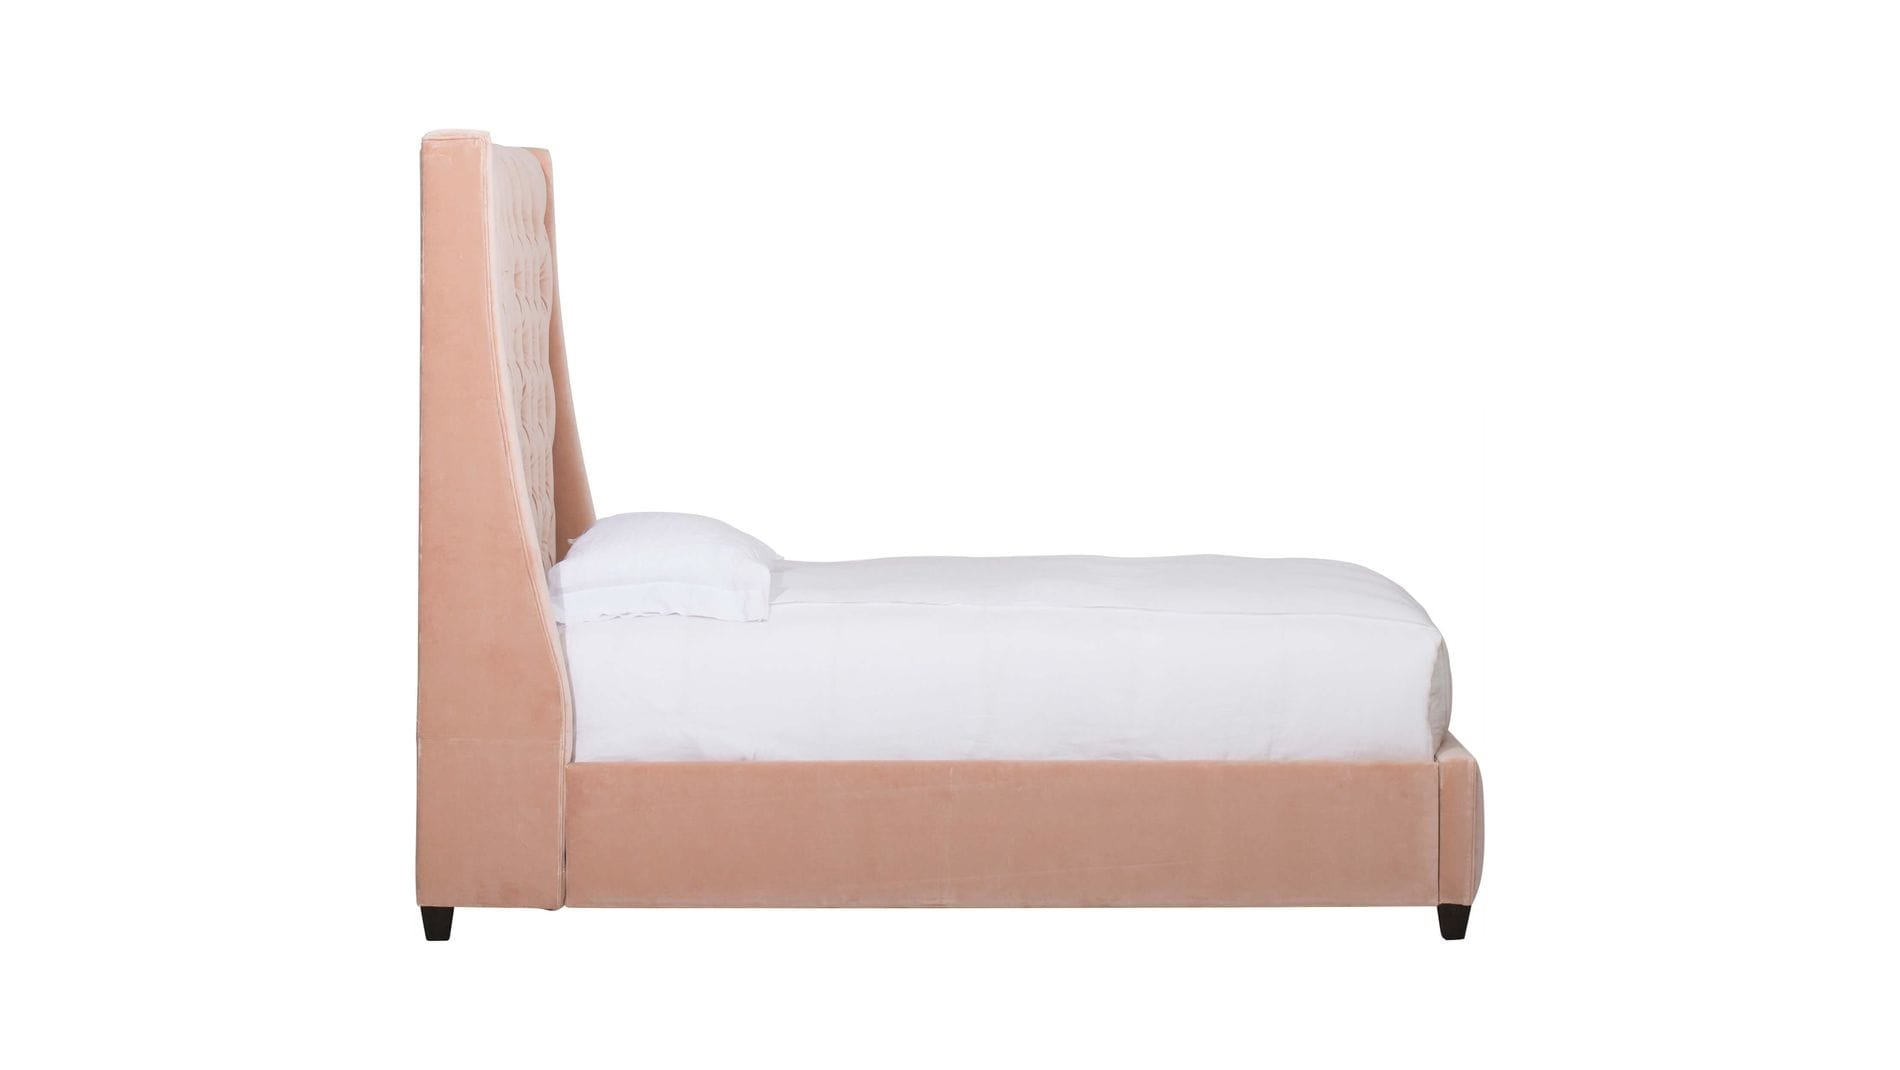 Кровать Ada 160х200 Розовый МР